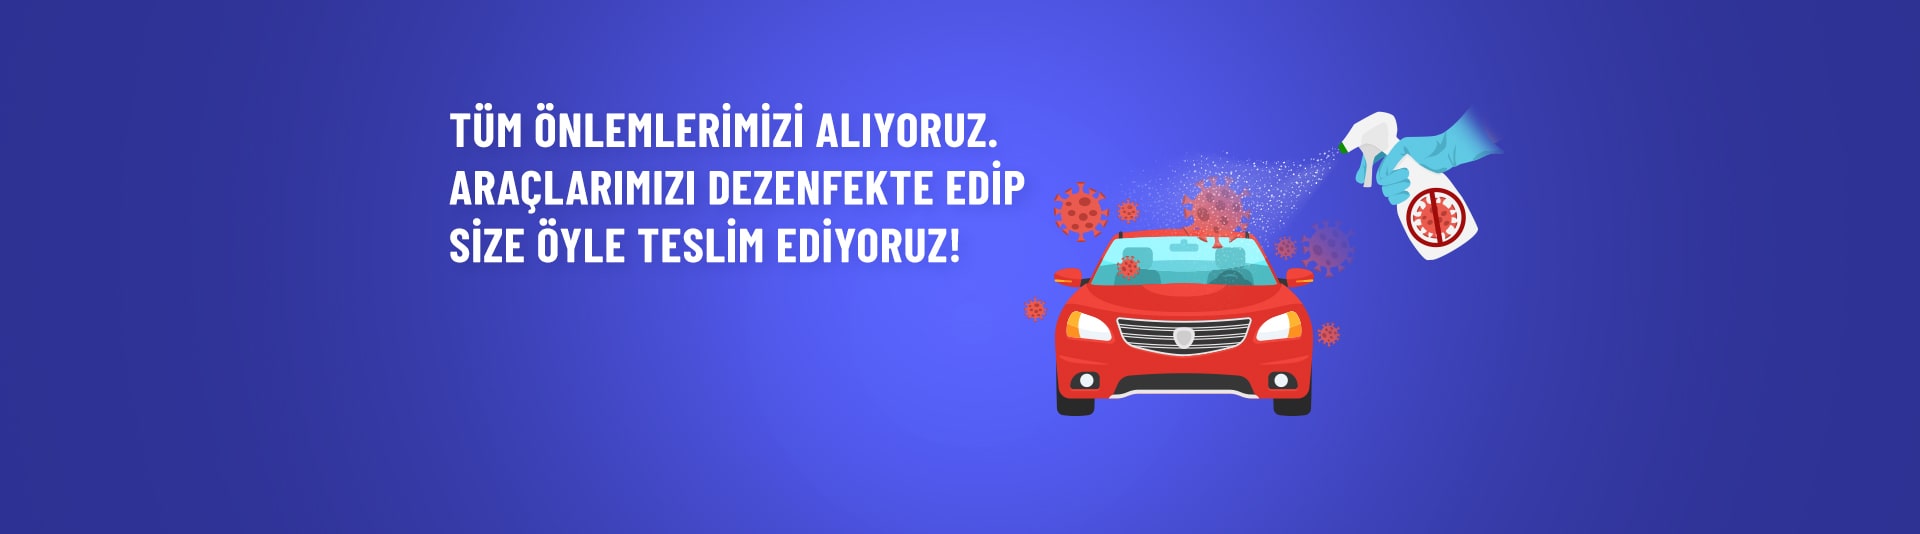 Rent Go | Türkiye'nin Araç Kiralama Şirketi